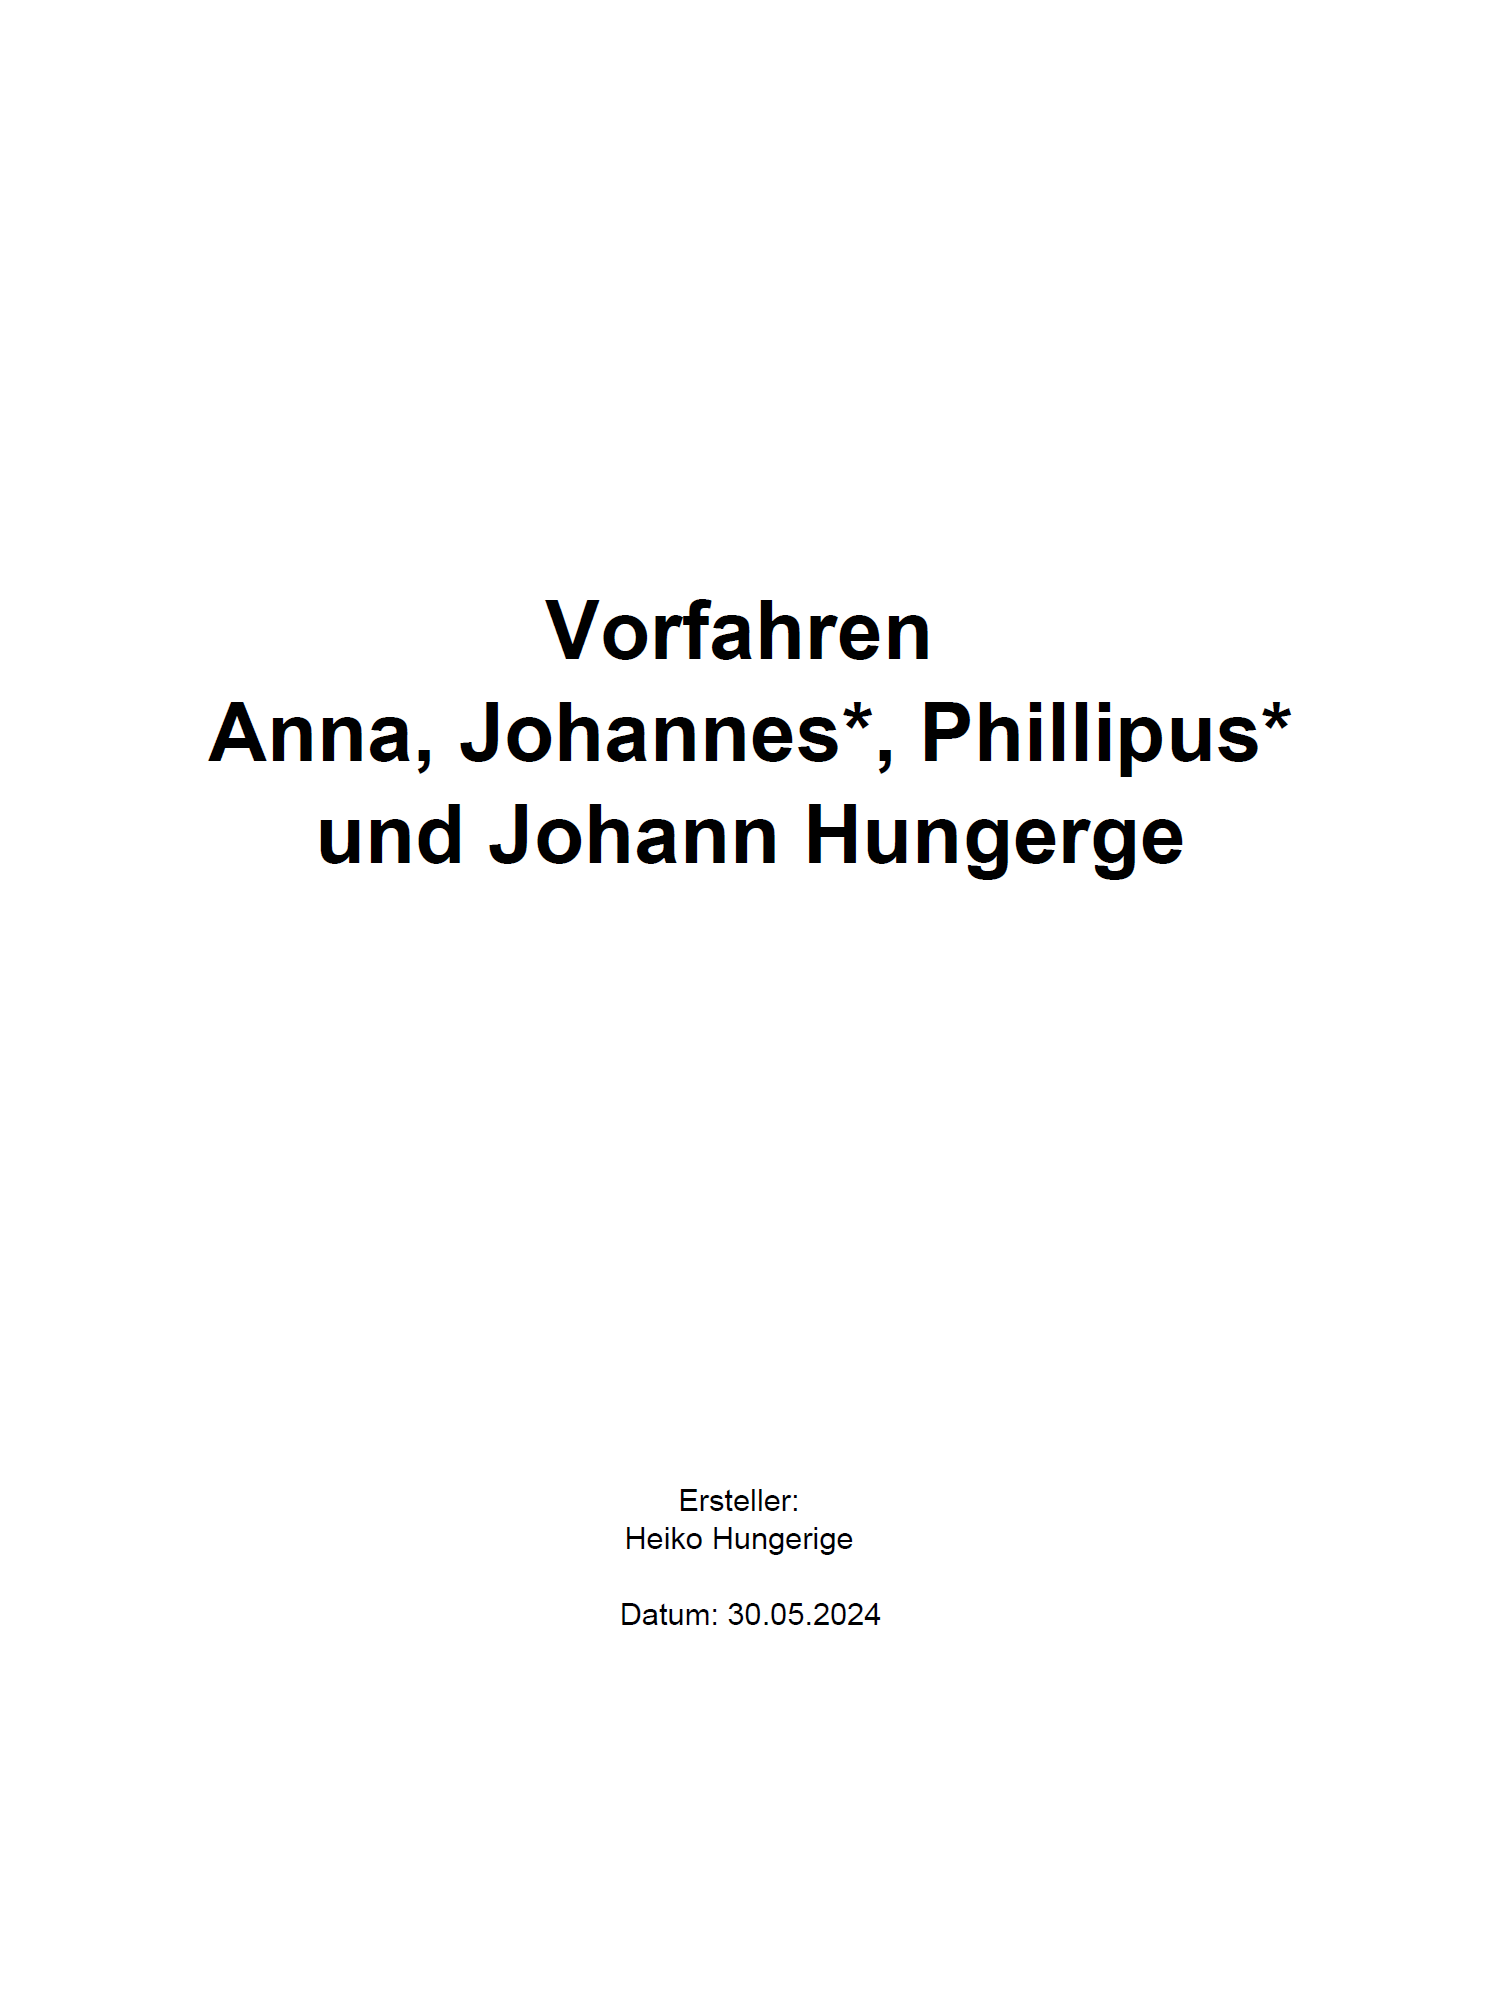 Ahnenbuch (Beispiel 3) mit Ahnenblatt 4.07 - Vorfahren Anna, Johannes, Phillipus und Johann Hungerge